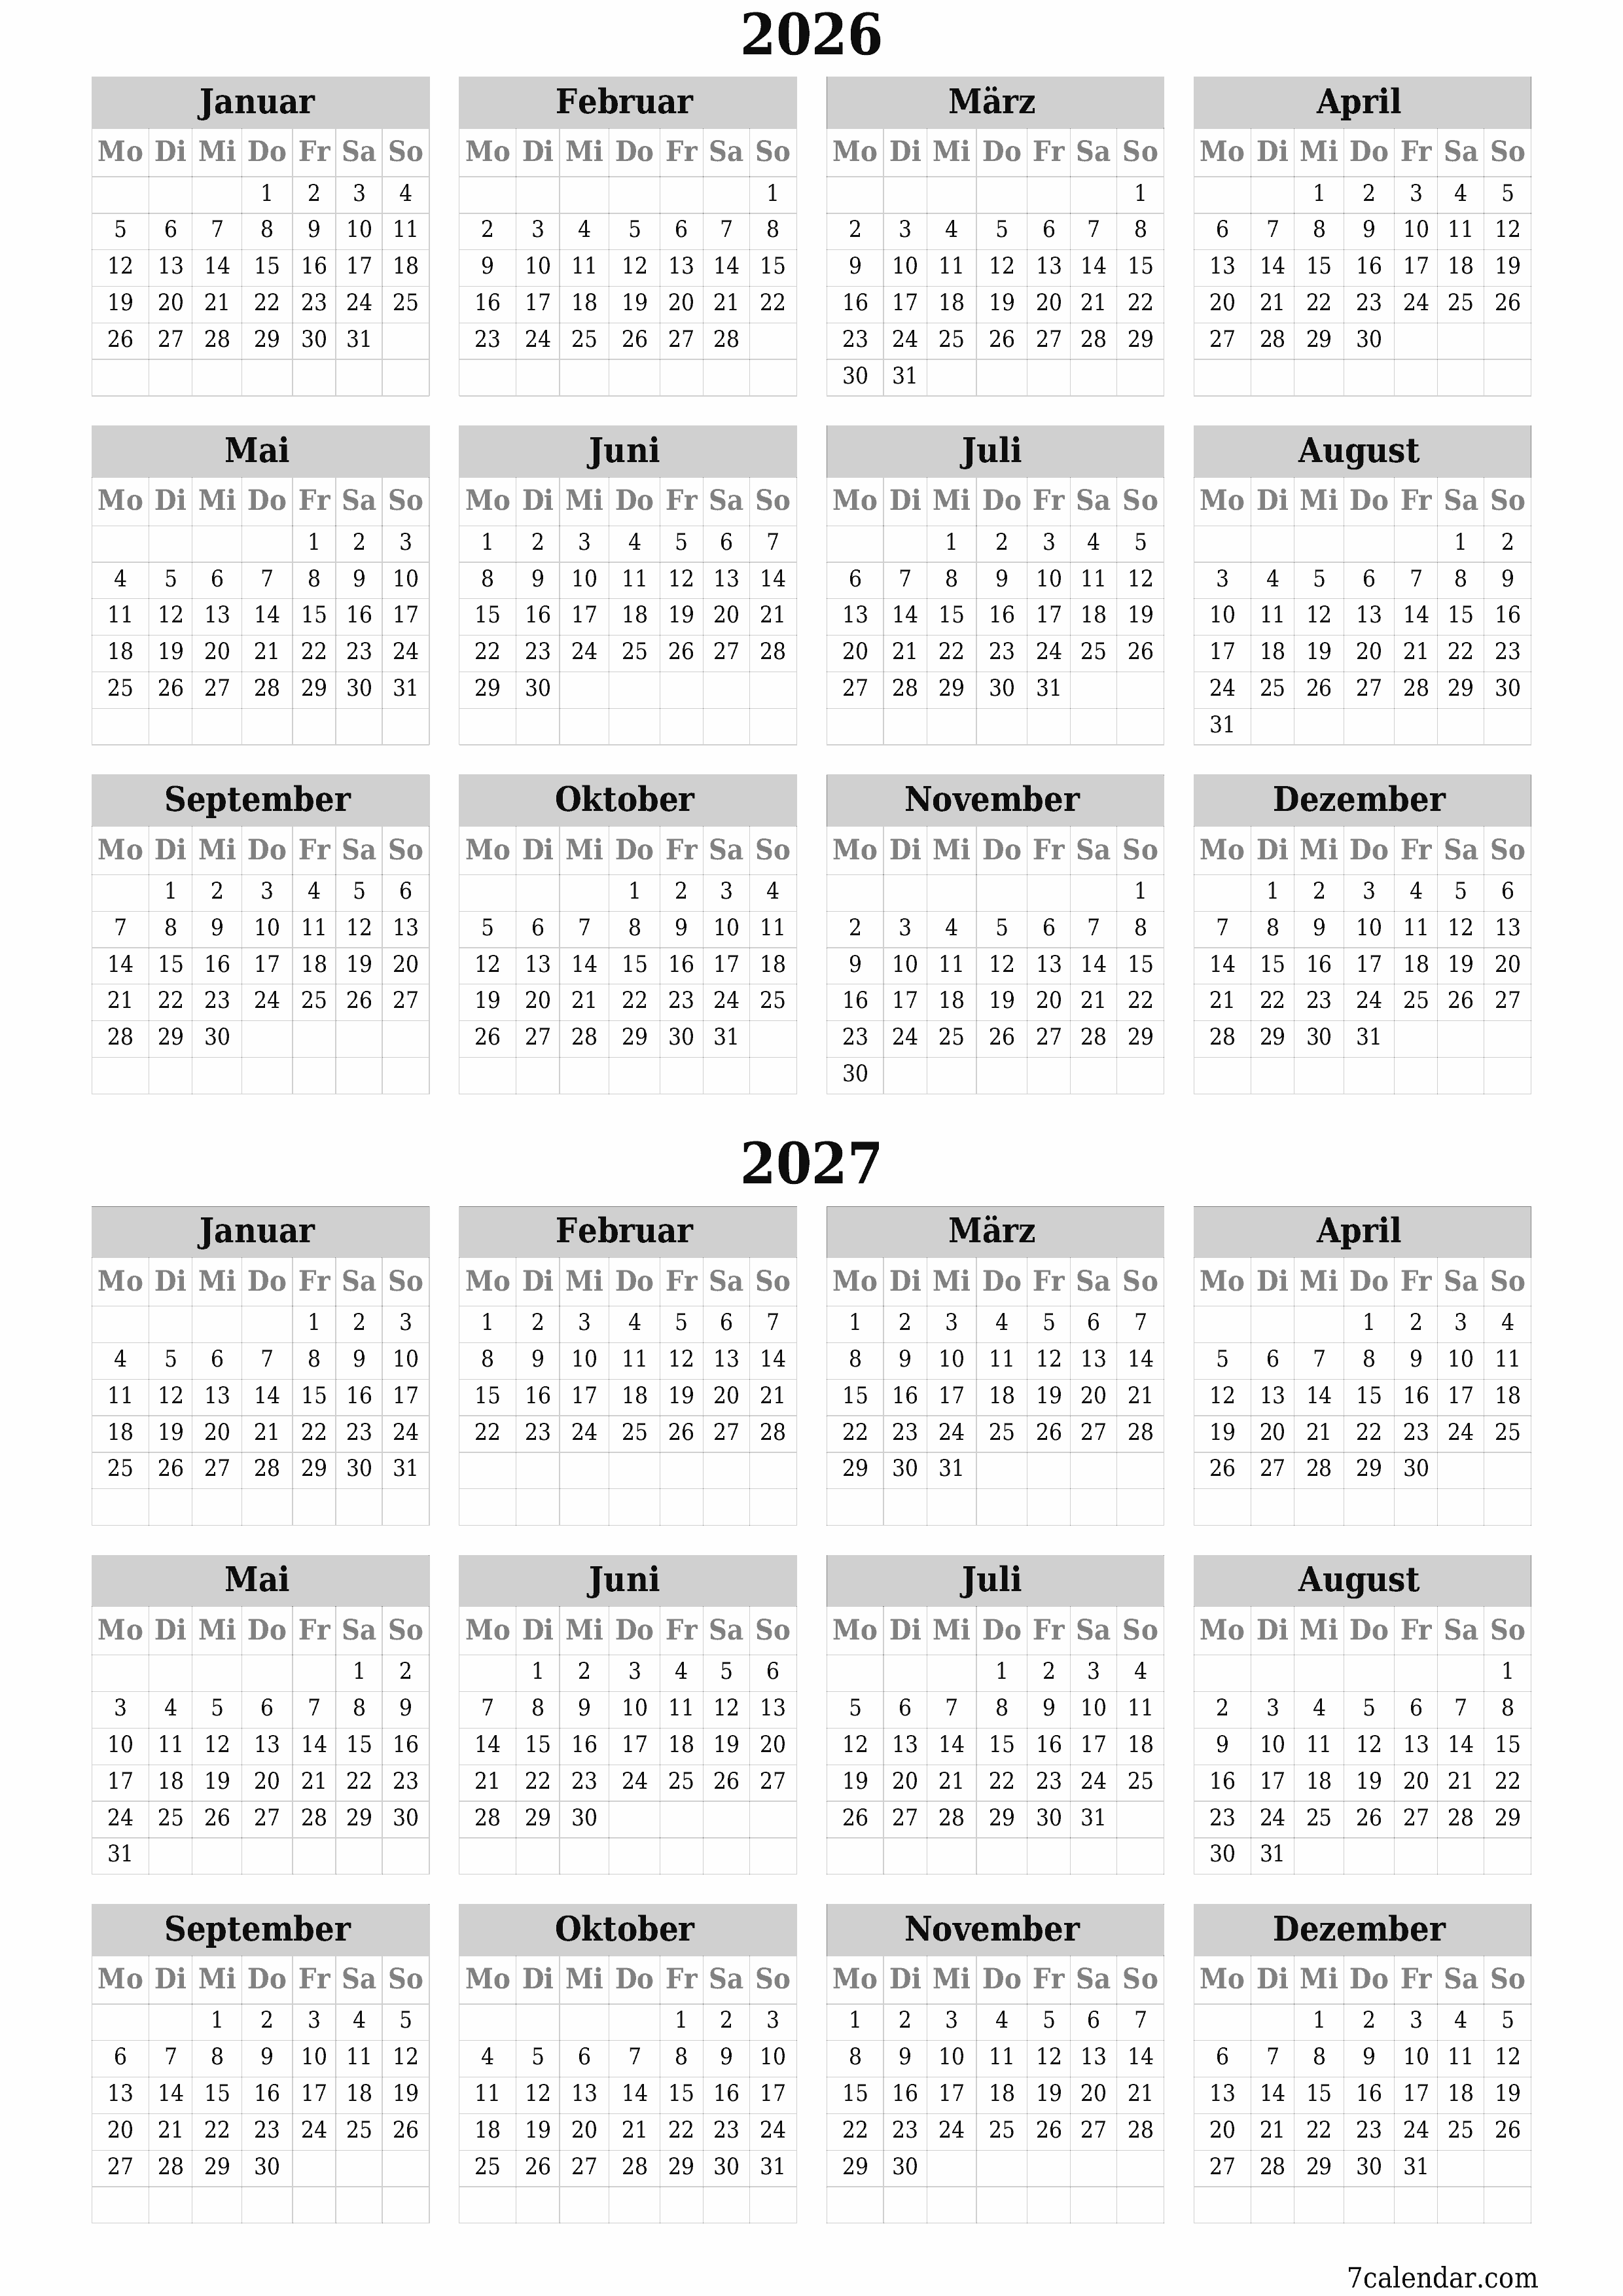 Jahresplanerkalender für das Jahr 2026, 2027 mit Notizen leeren, speichern und als PDF PNG German - 7calendar.com drucken